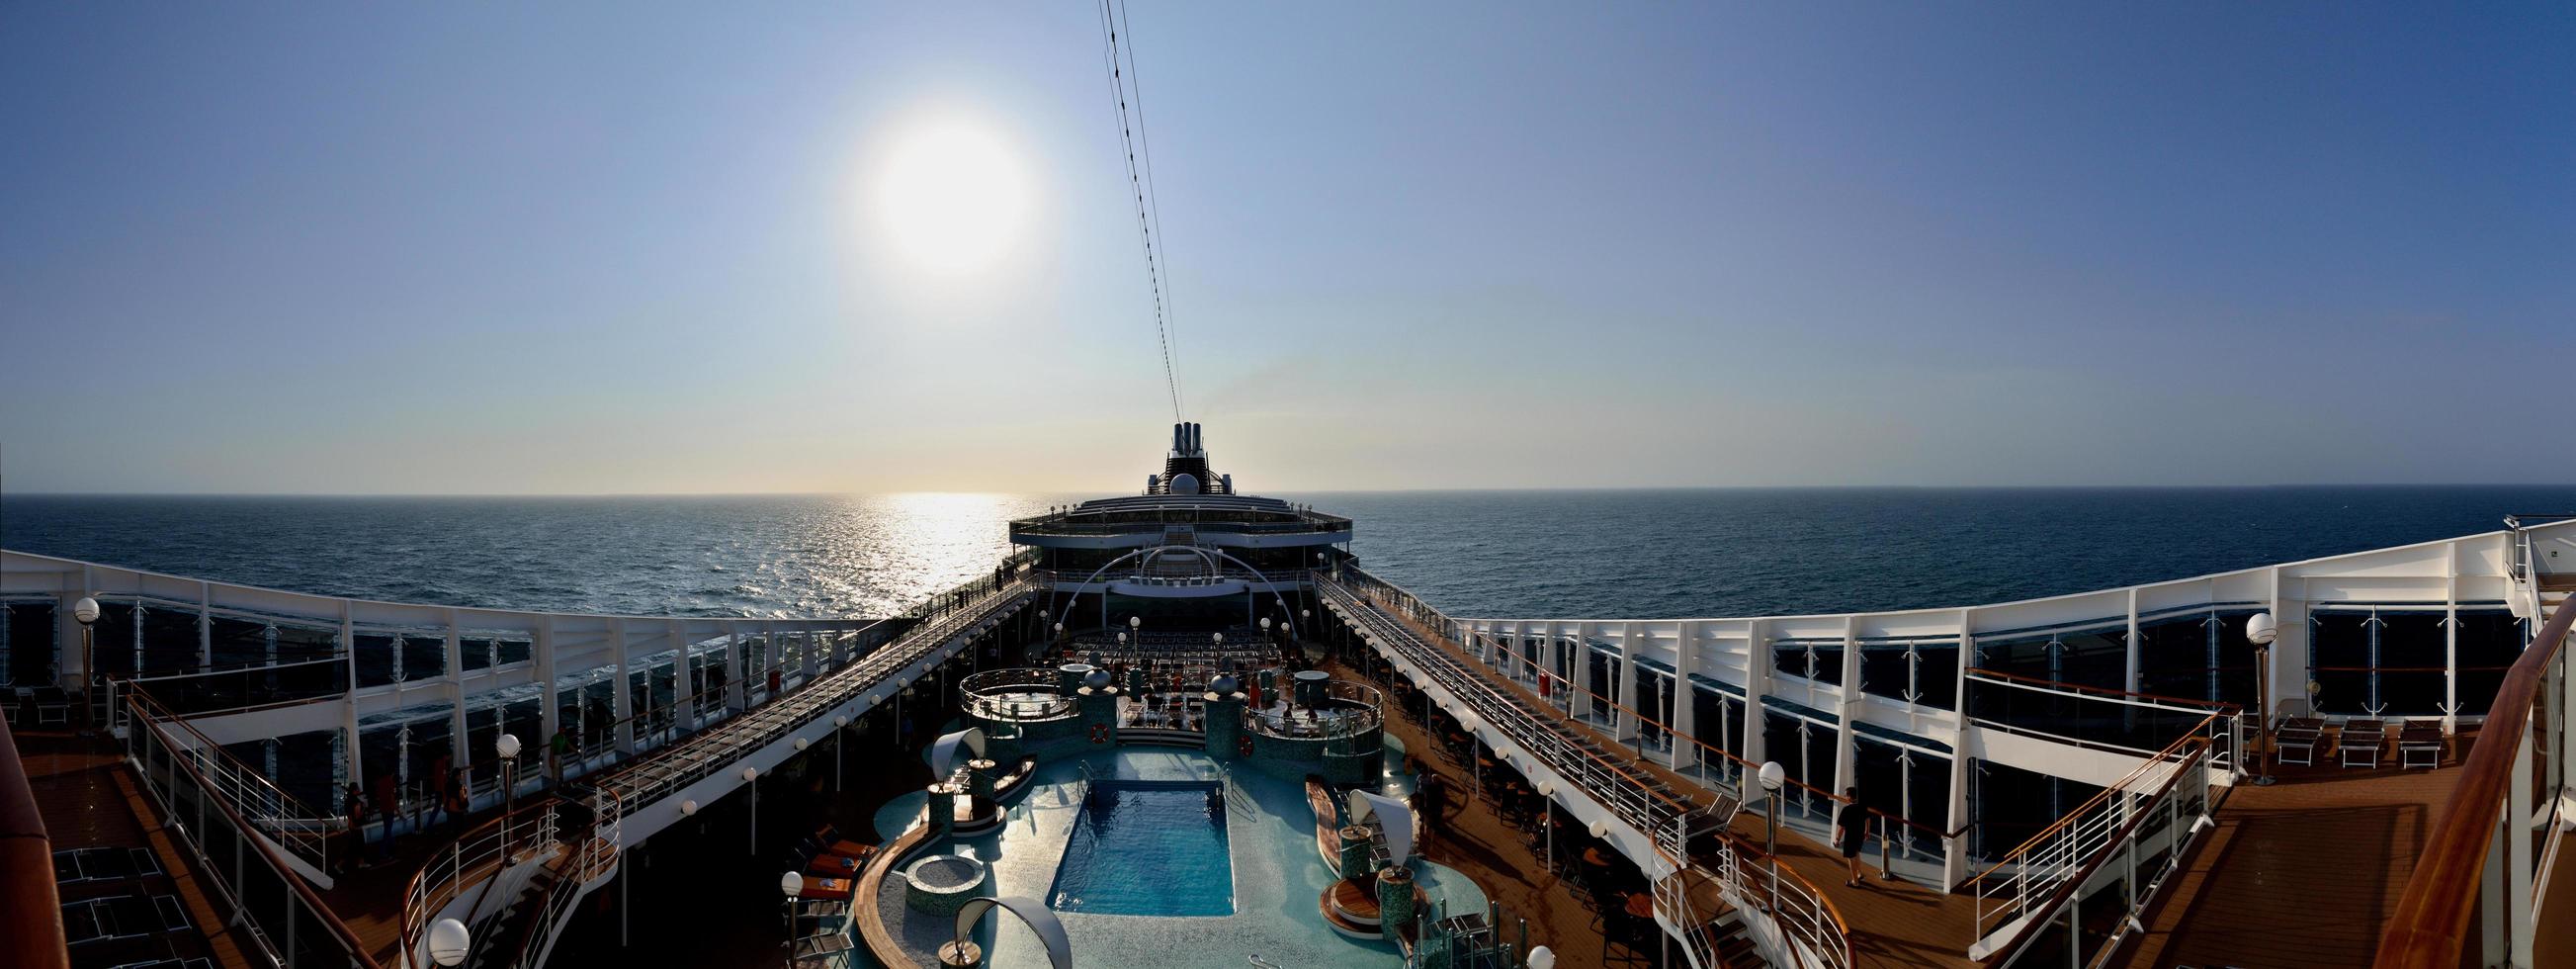 Kreuzfahrtschiff mit Panorama auf offenem Deck foto